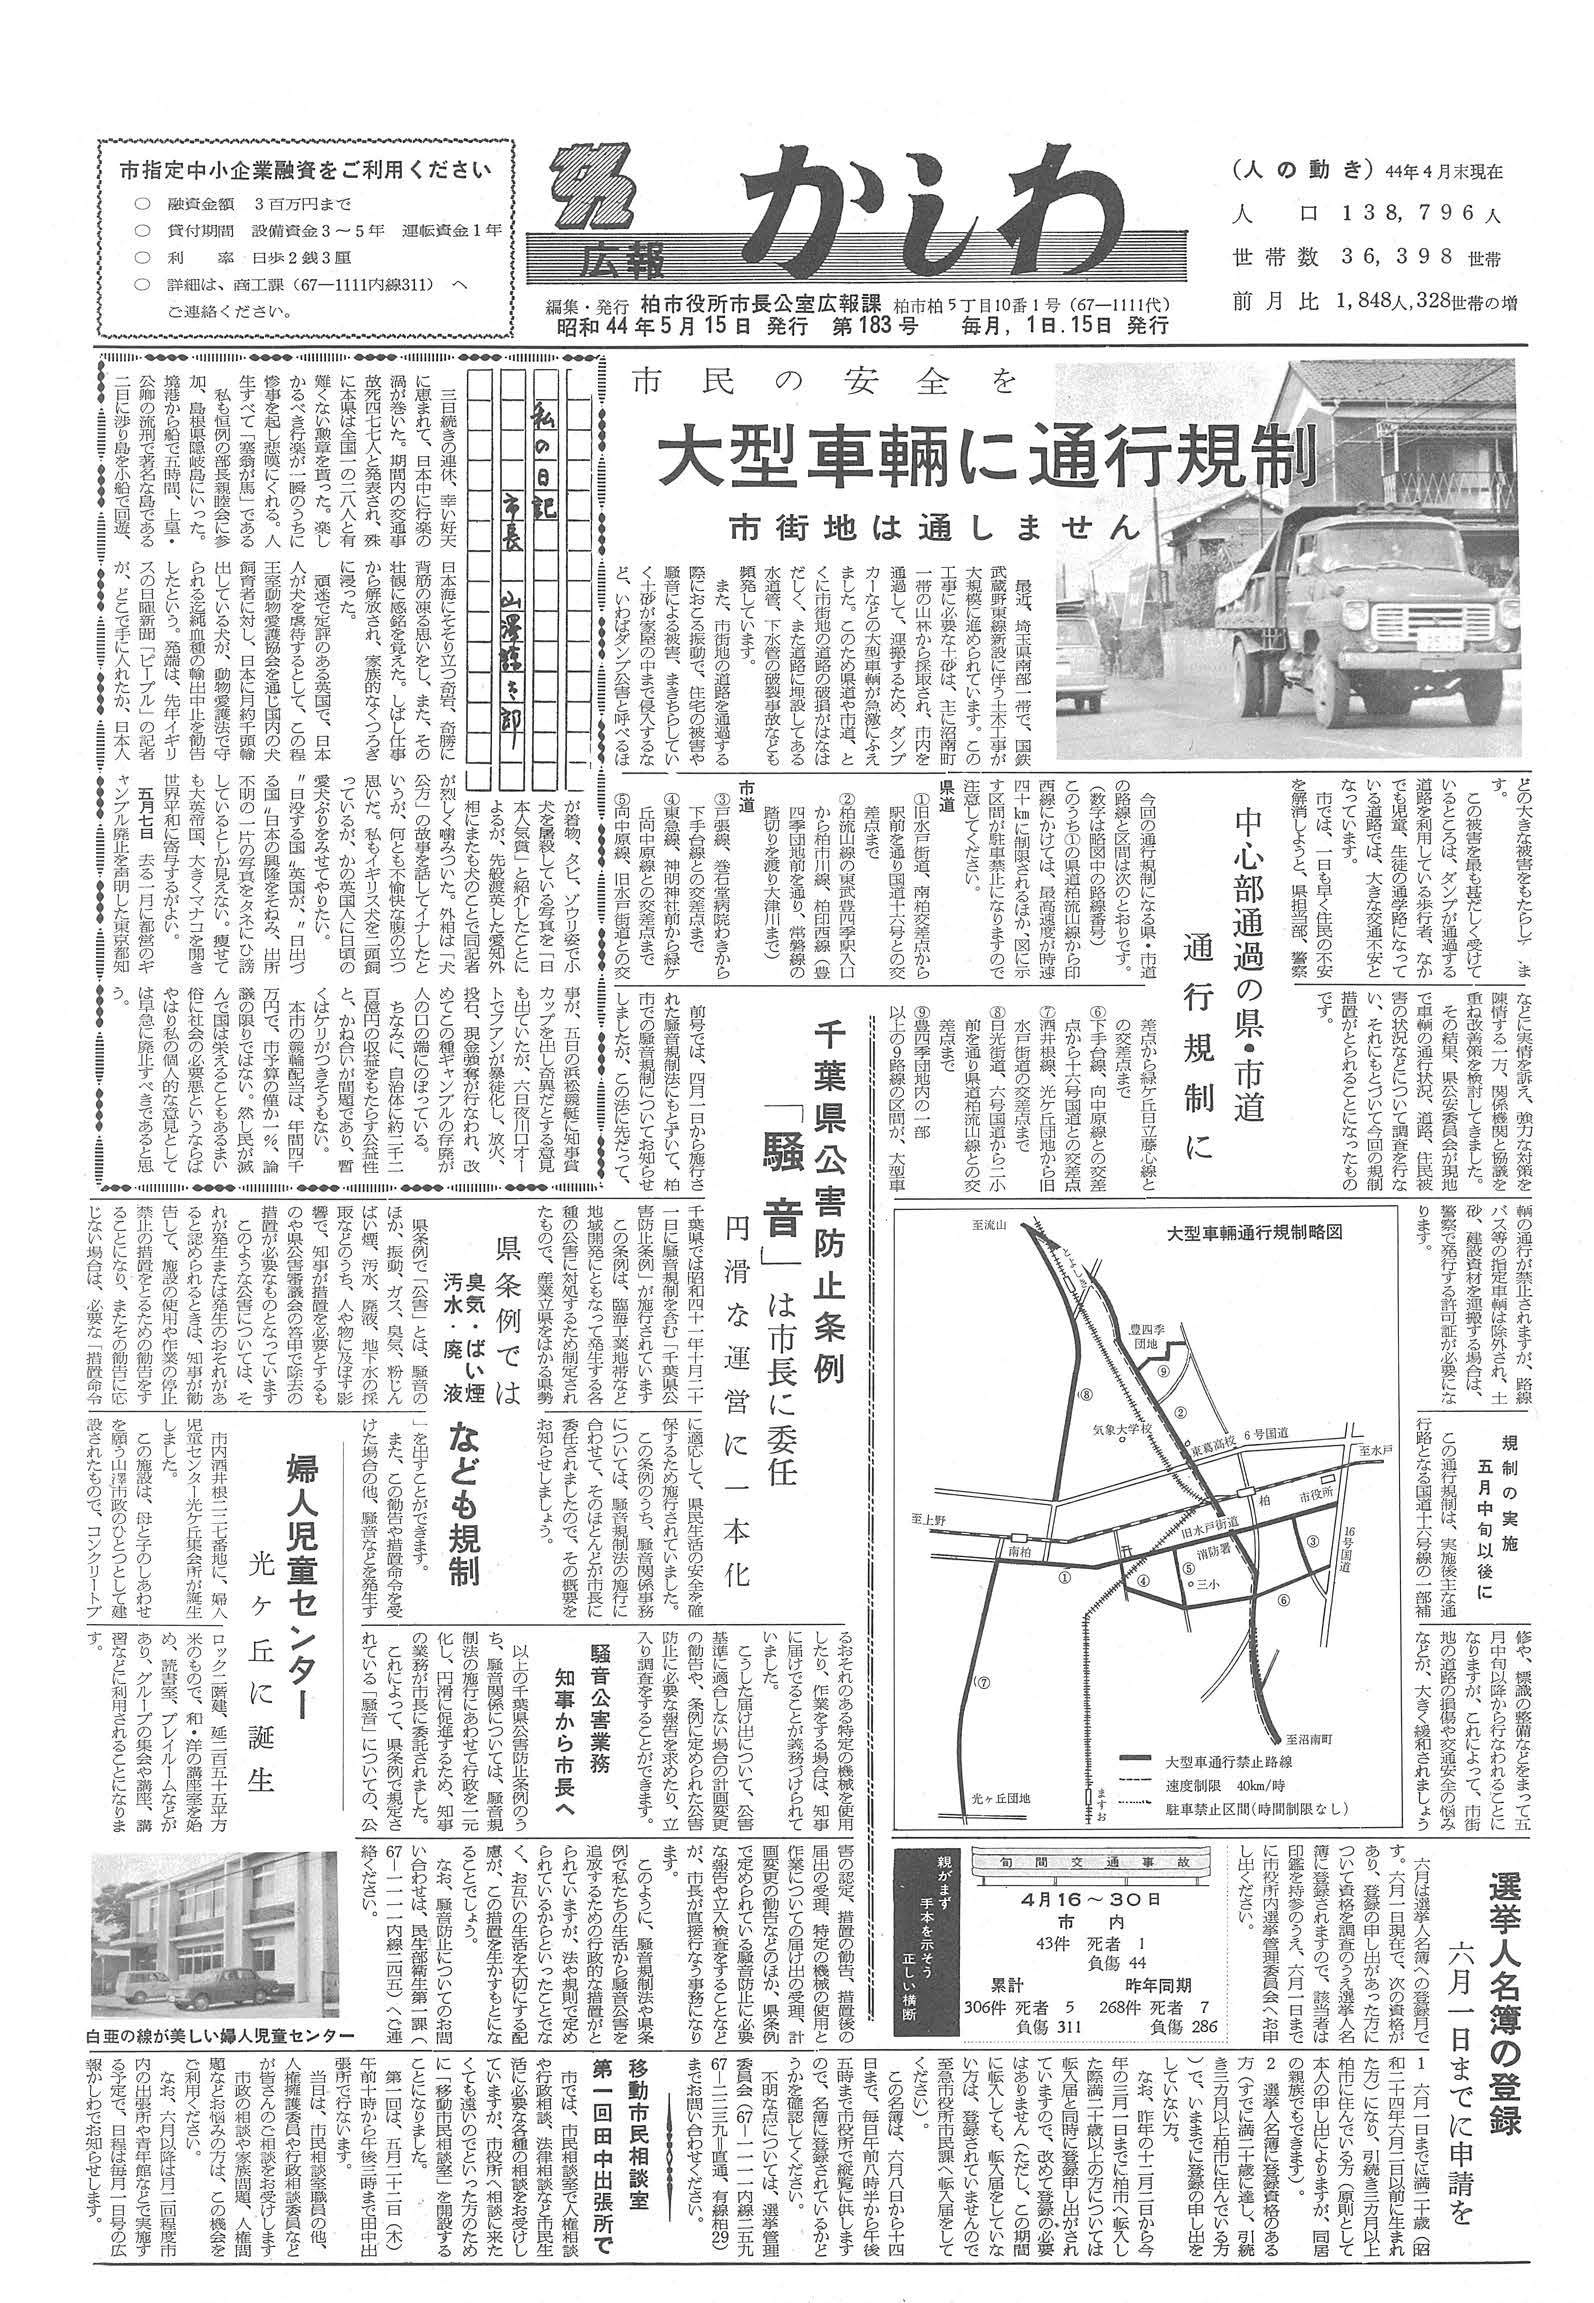 広報かしわ　昭和44年5月15日発行　183号